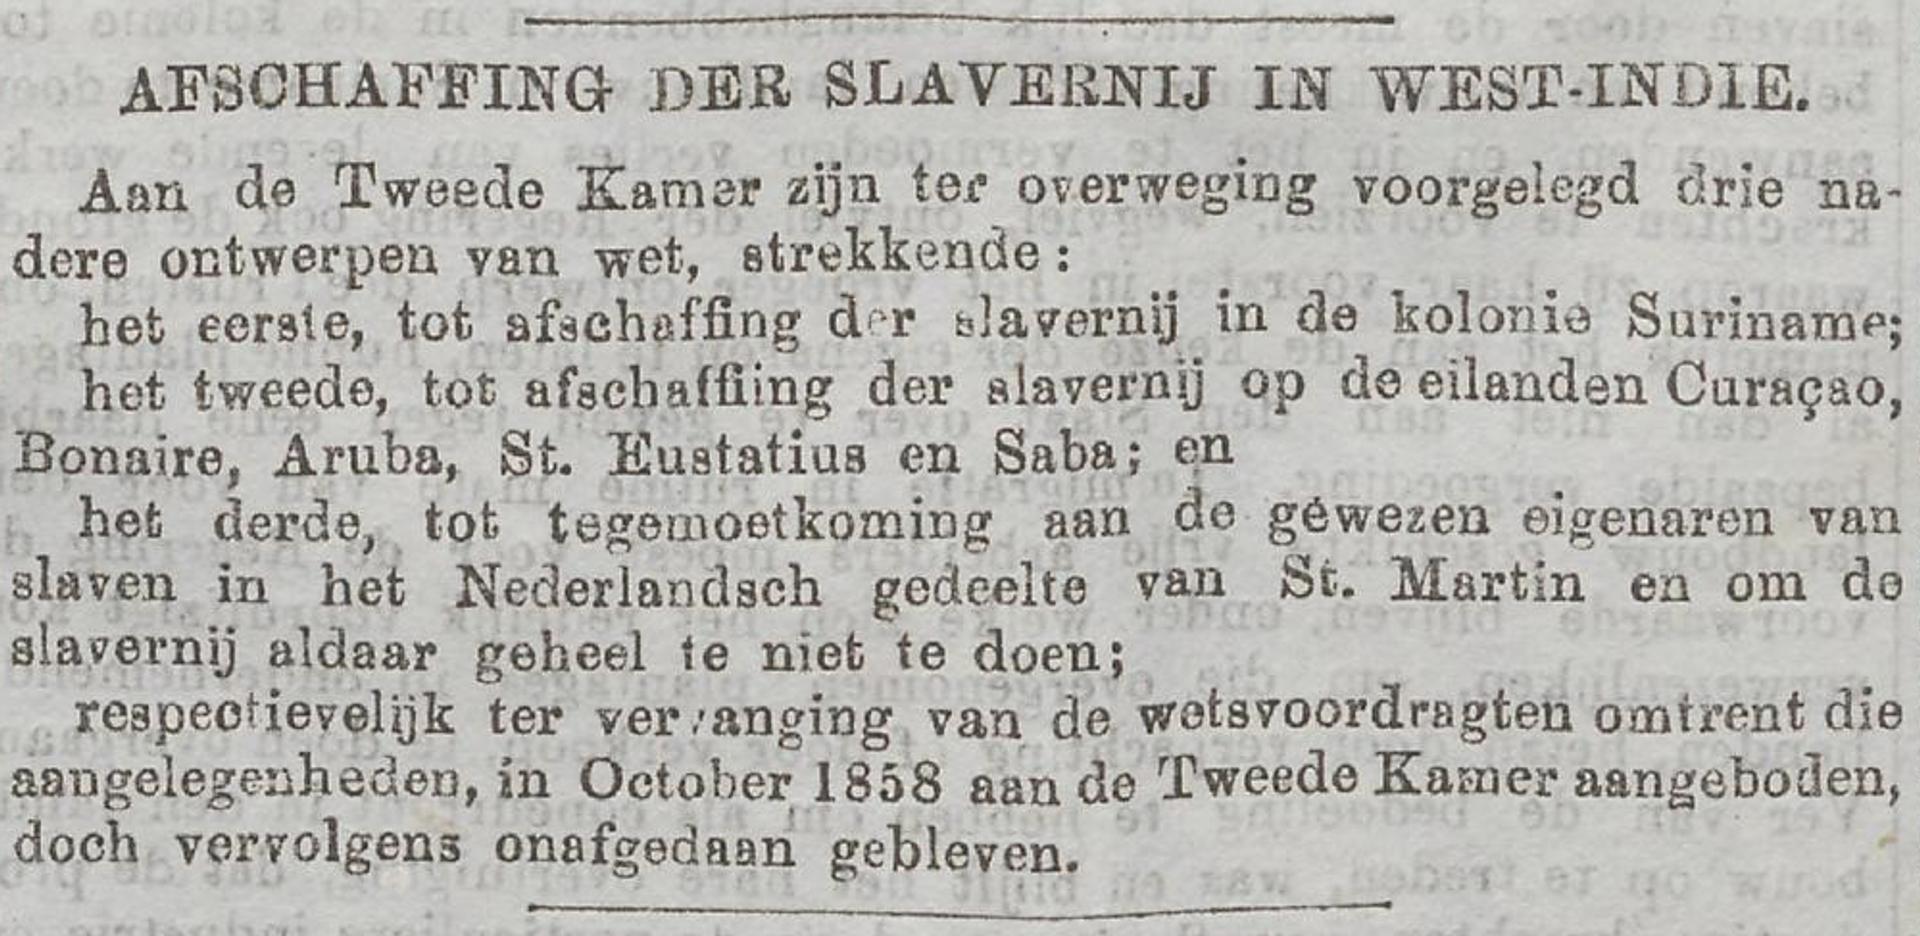 Nieuw Amsterdamsch handels- en effectenblad, mei 1860.